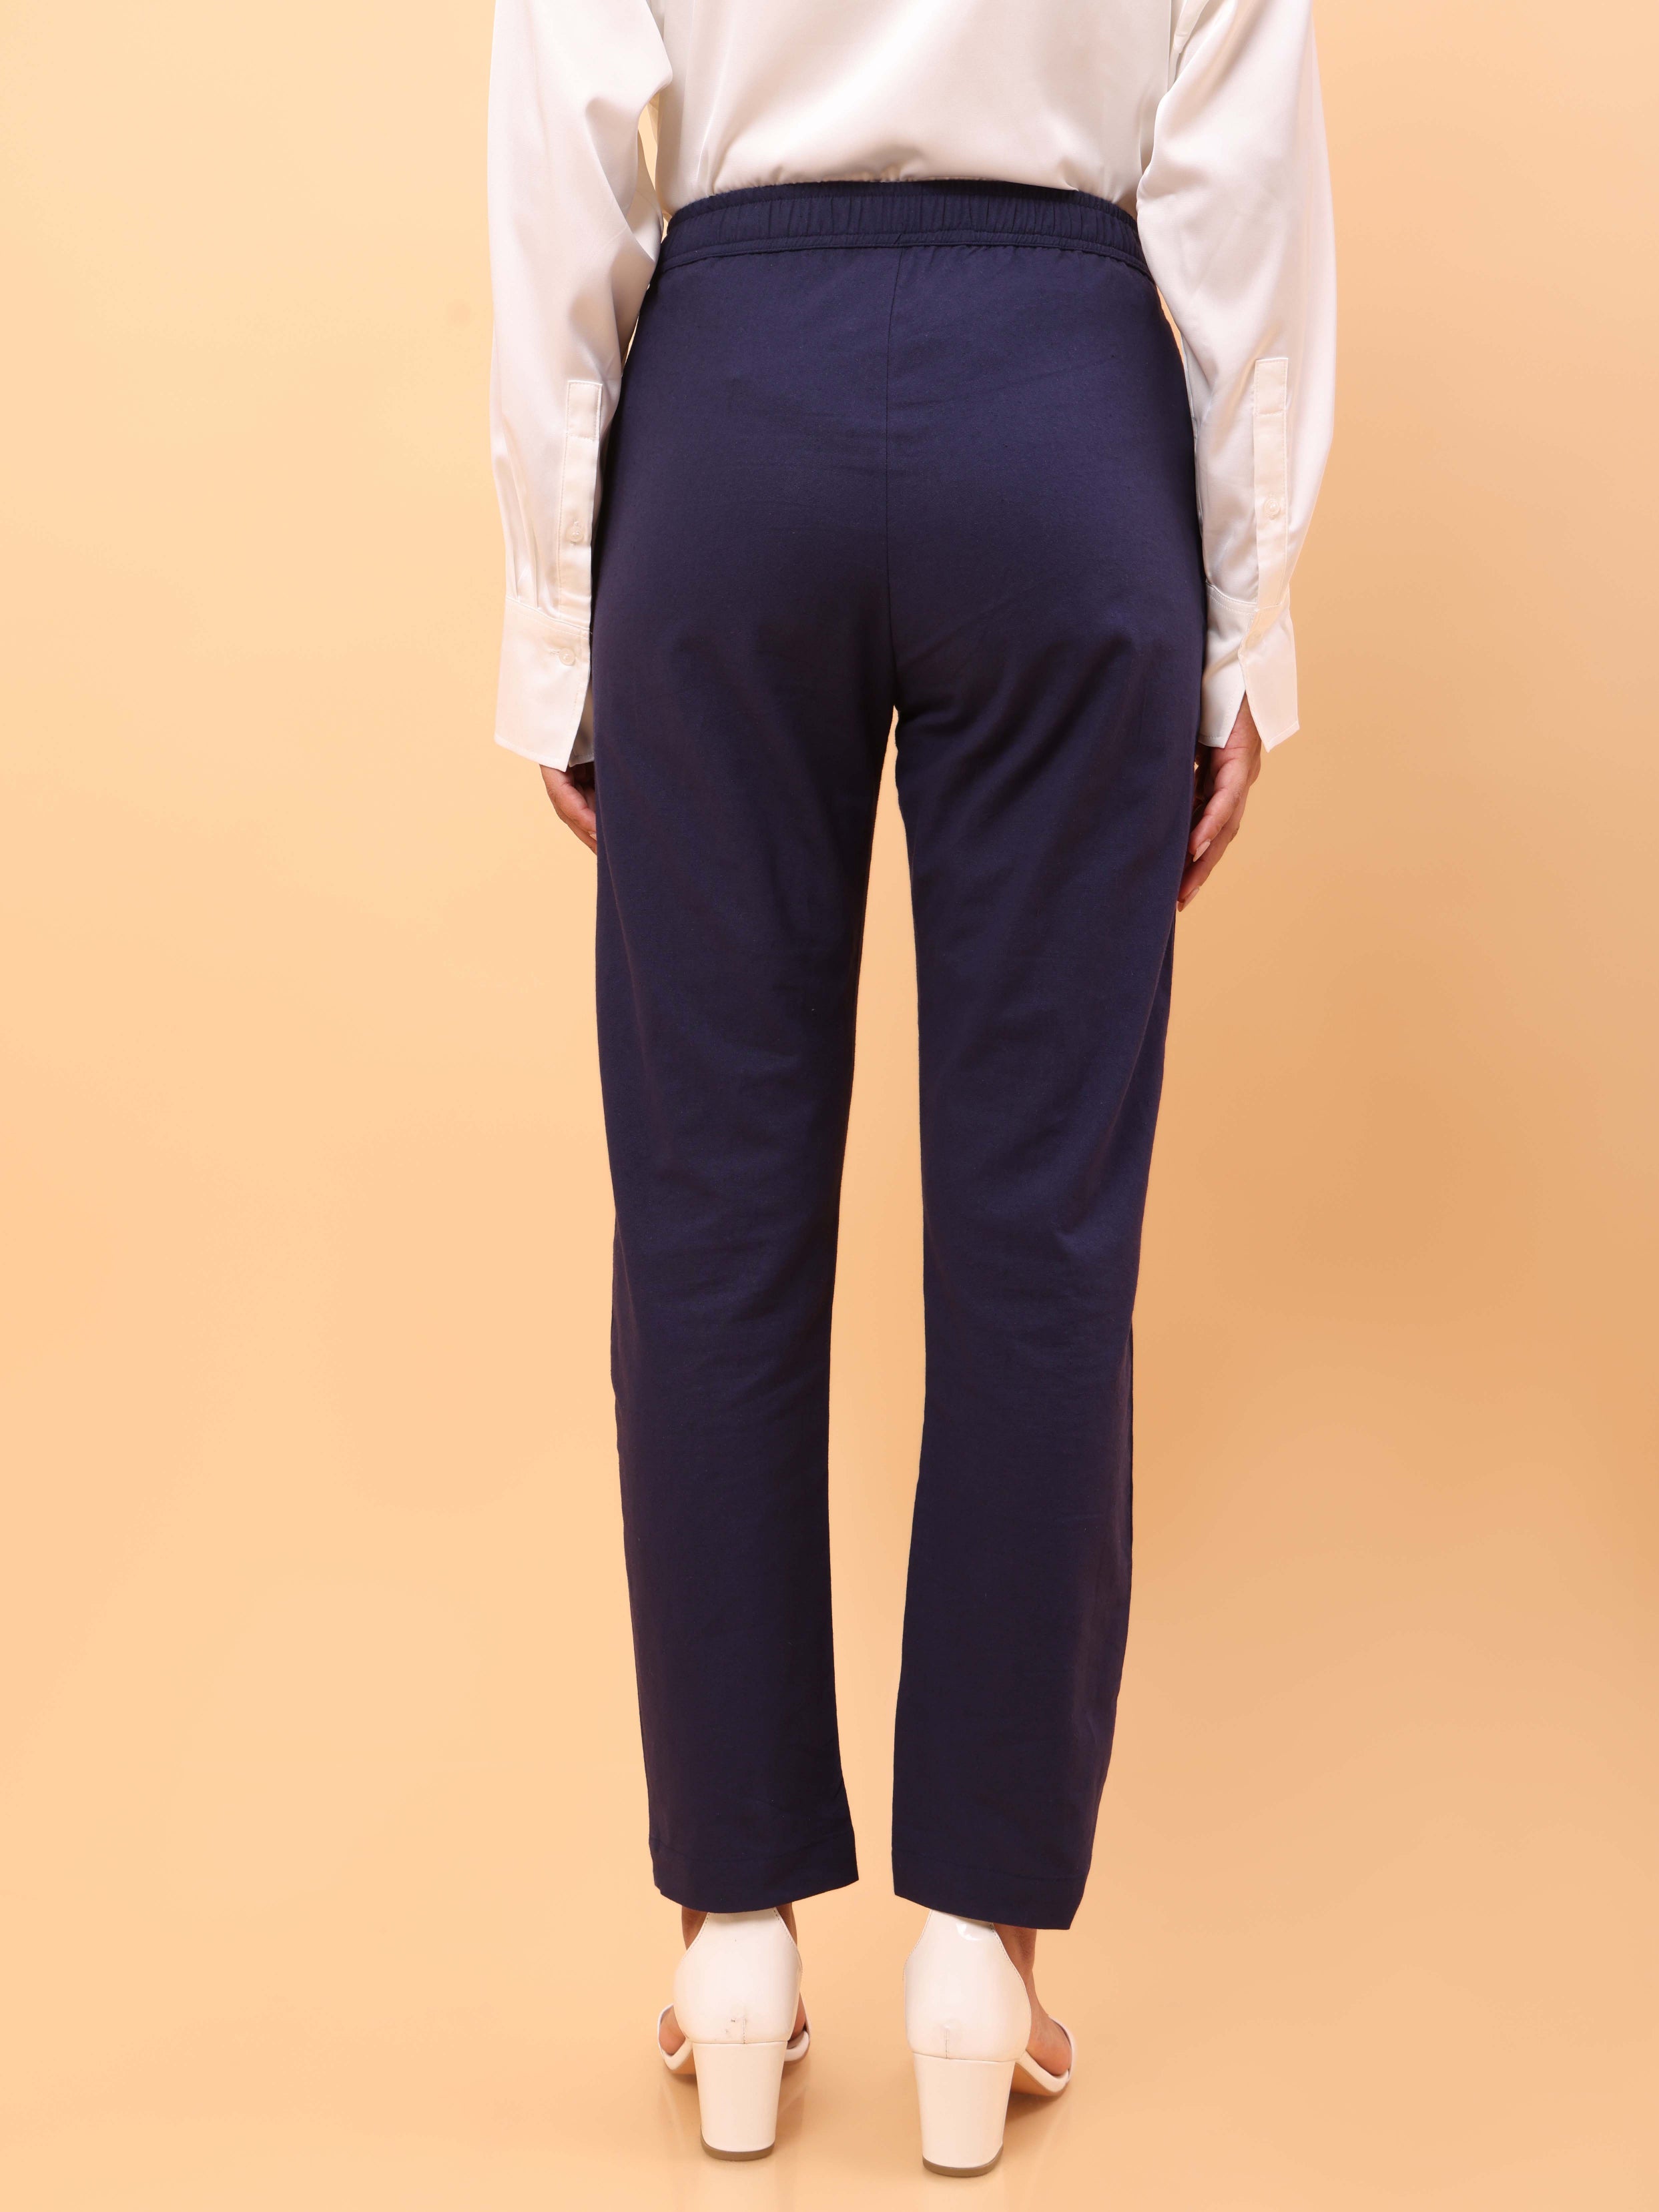 Blauer - 8816WP8 - Women's 8-Pocket Cotton Blend Pants